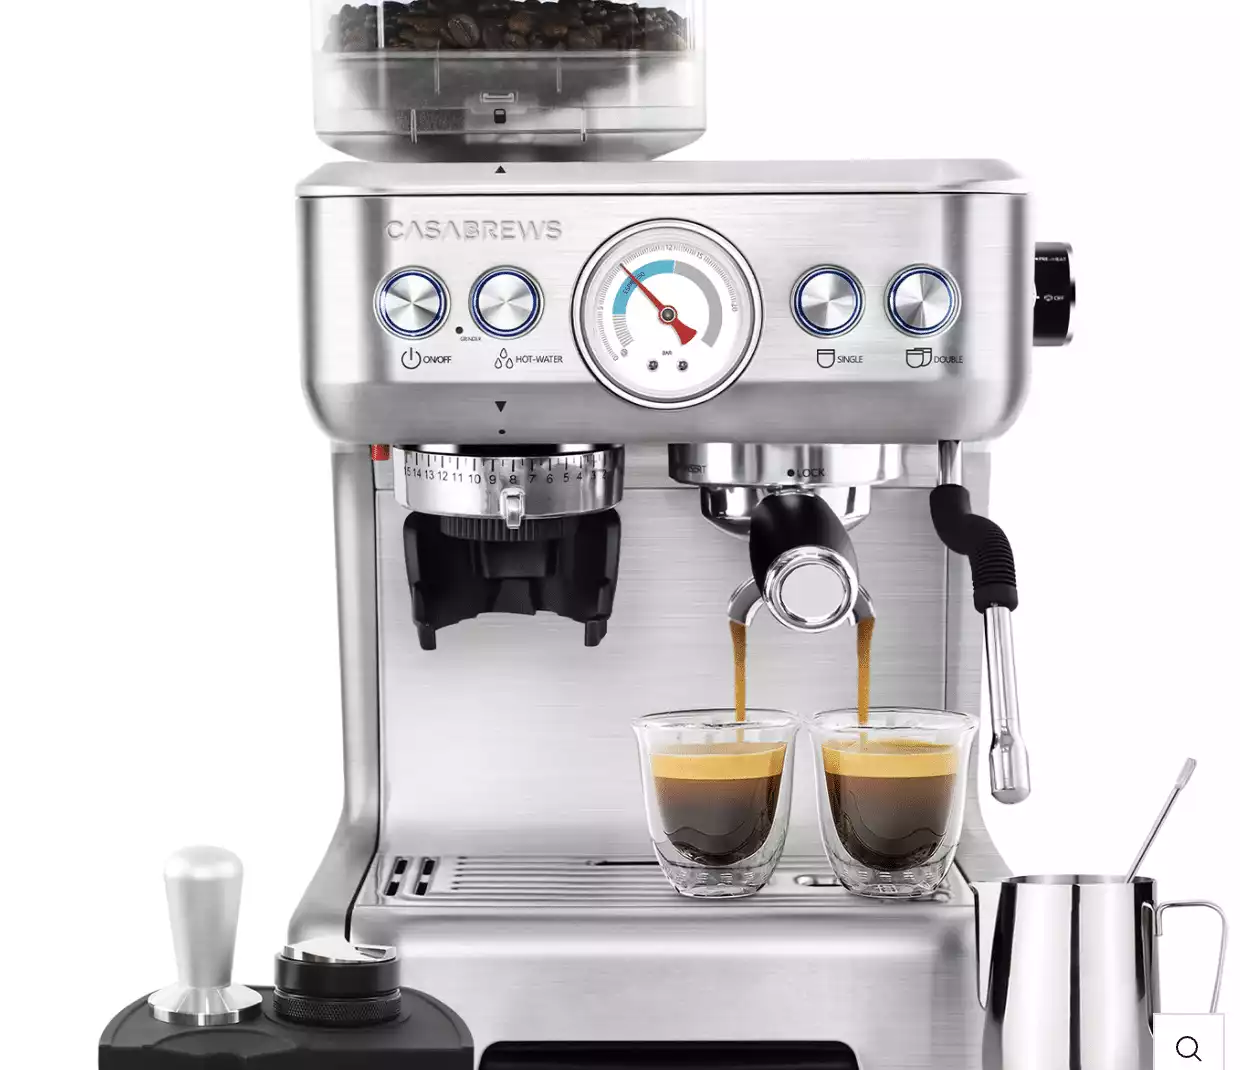 CASABREWS 5700Gense All-in-One Espresso Machine